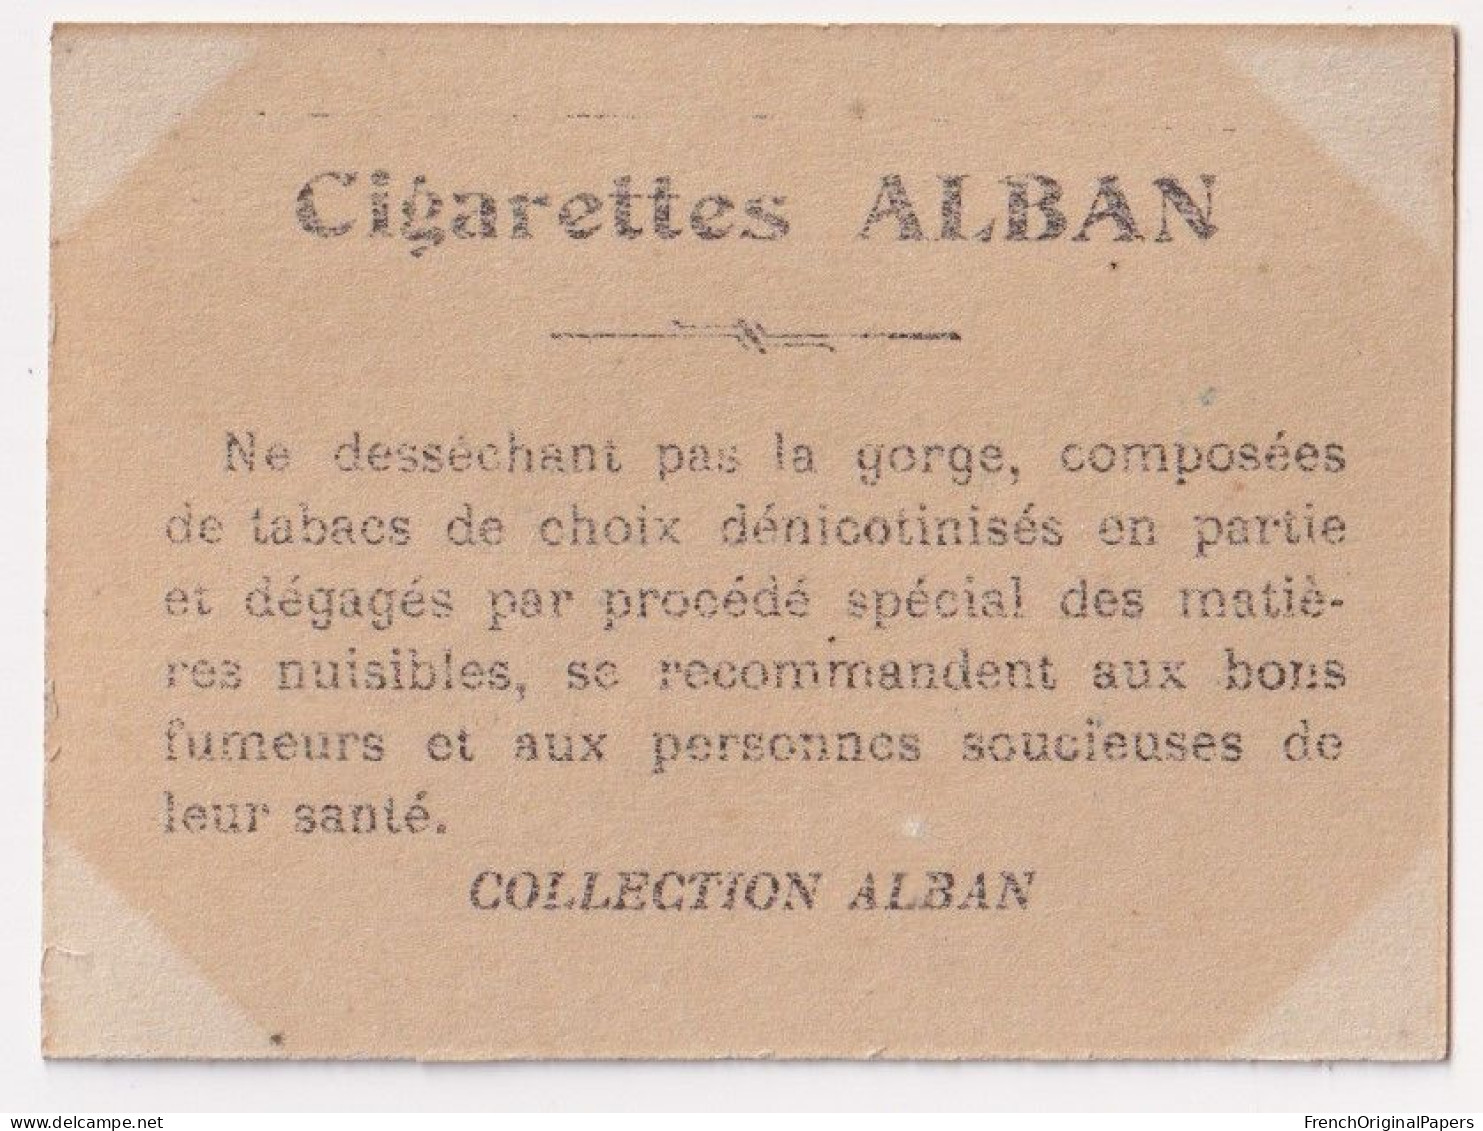 Tolédo - Cigarettes L. Alban 1910 Photo Femme Sexy Pin-up Vintage Artiste Cabaret Paris Bône Danse Danseuse A62-18 - Andere Merken